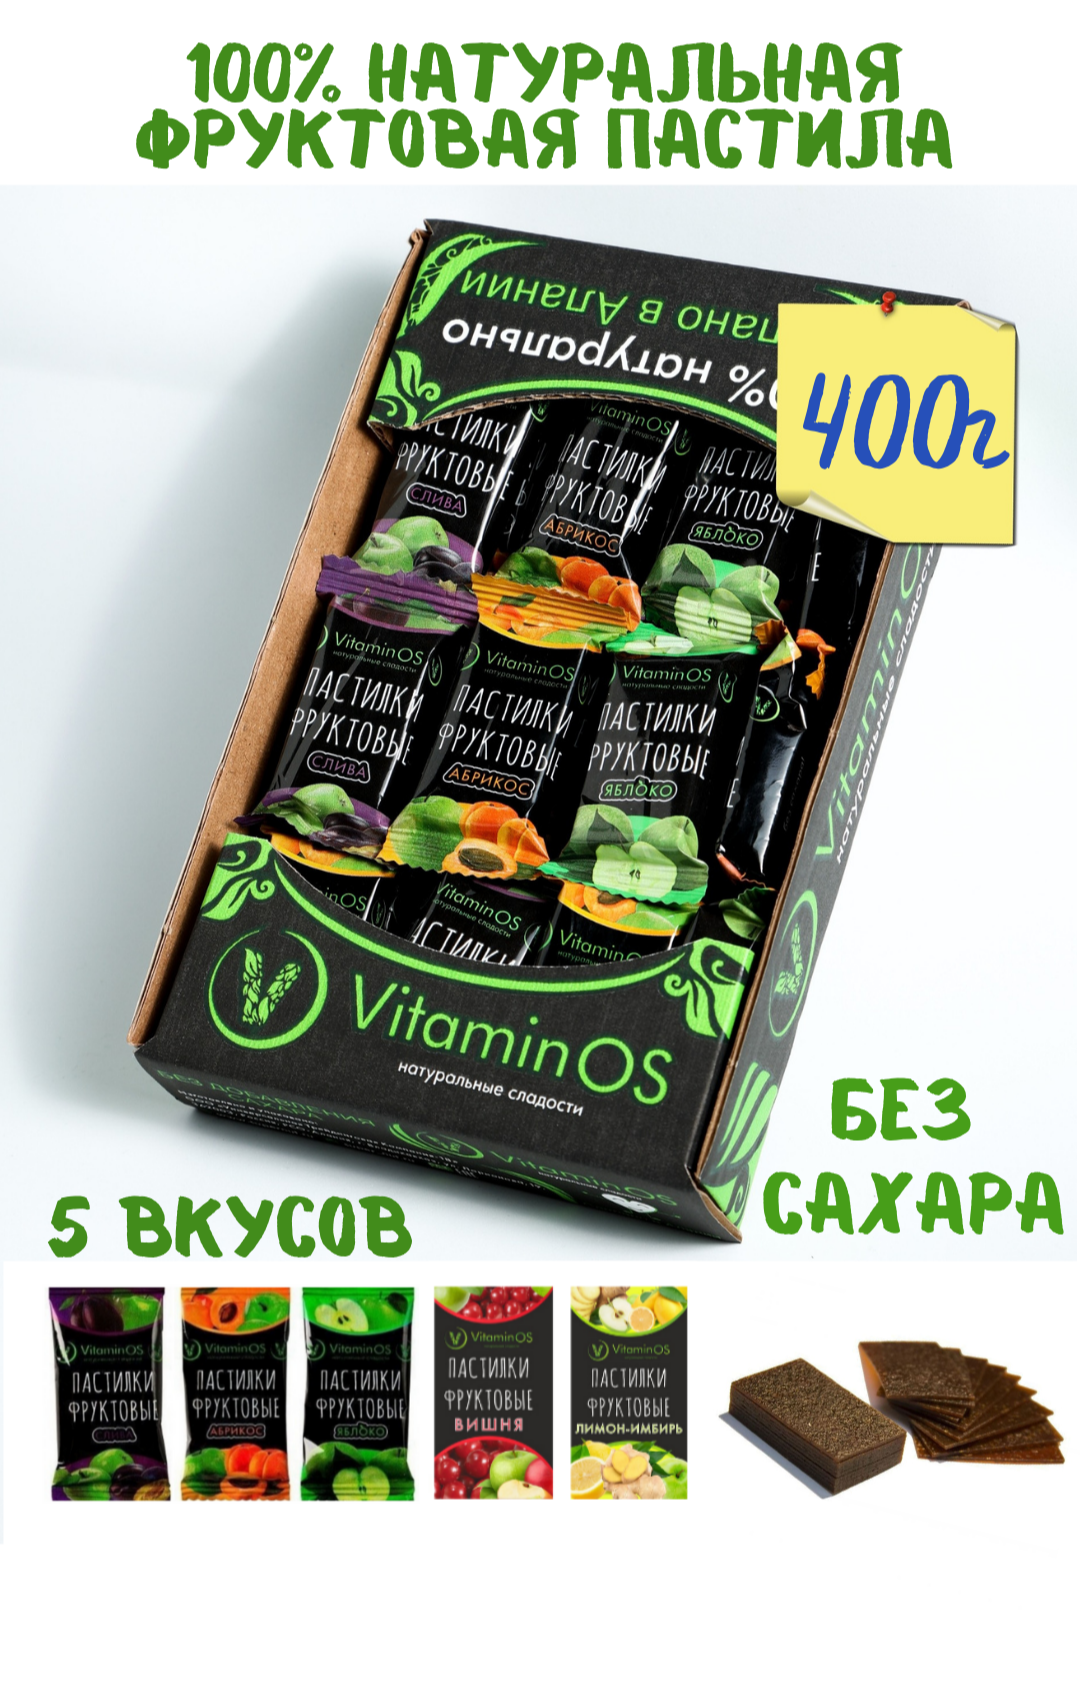 Пастила VitaminOS фруктовое ассорти 400г - фото 6